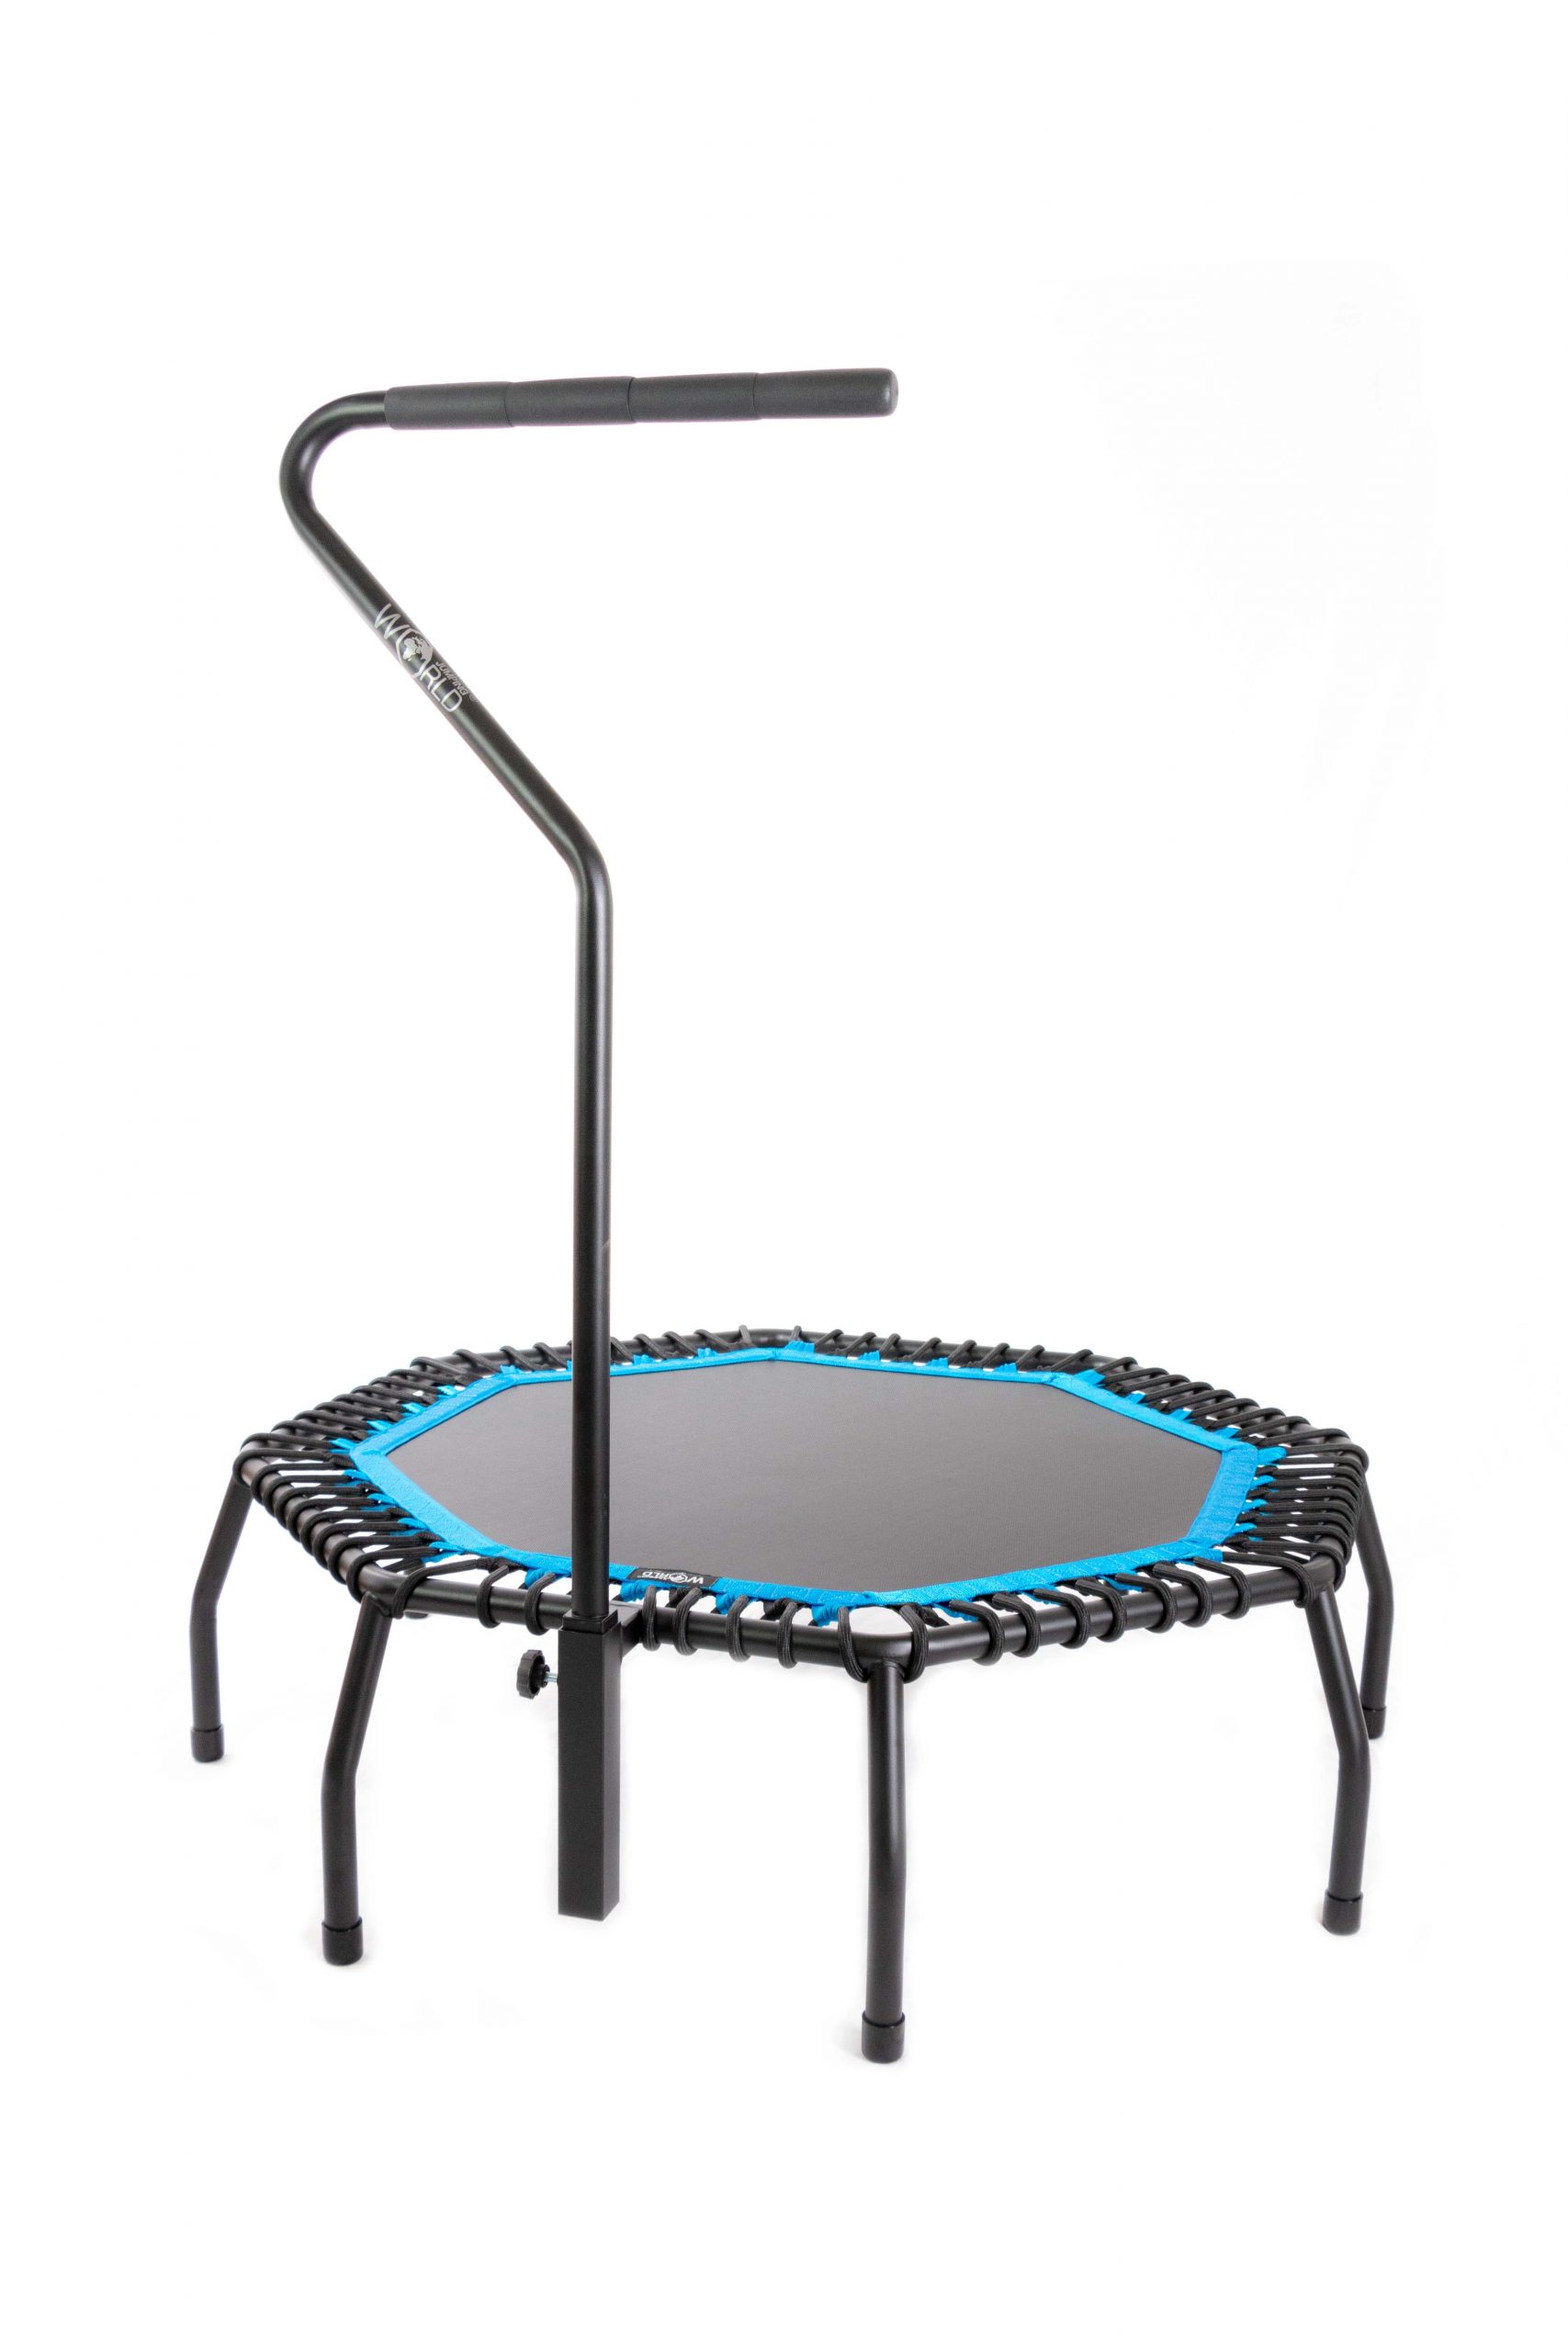 dienblad Instrument band SPIDER Studio Standard trampoline - Blue - World Jumping